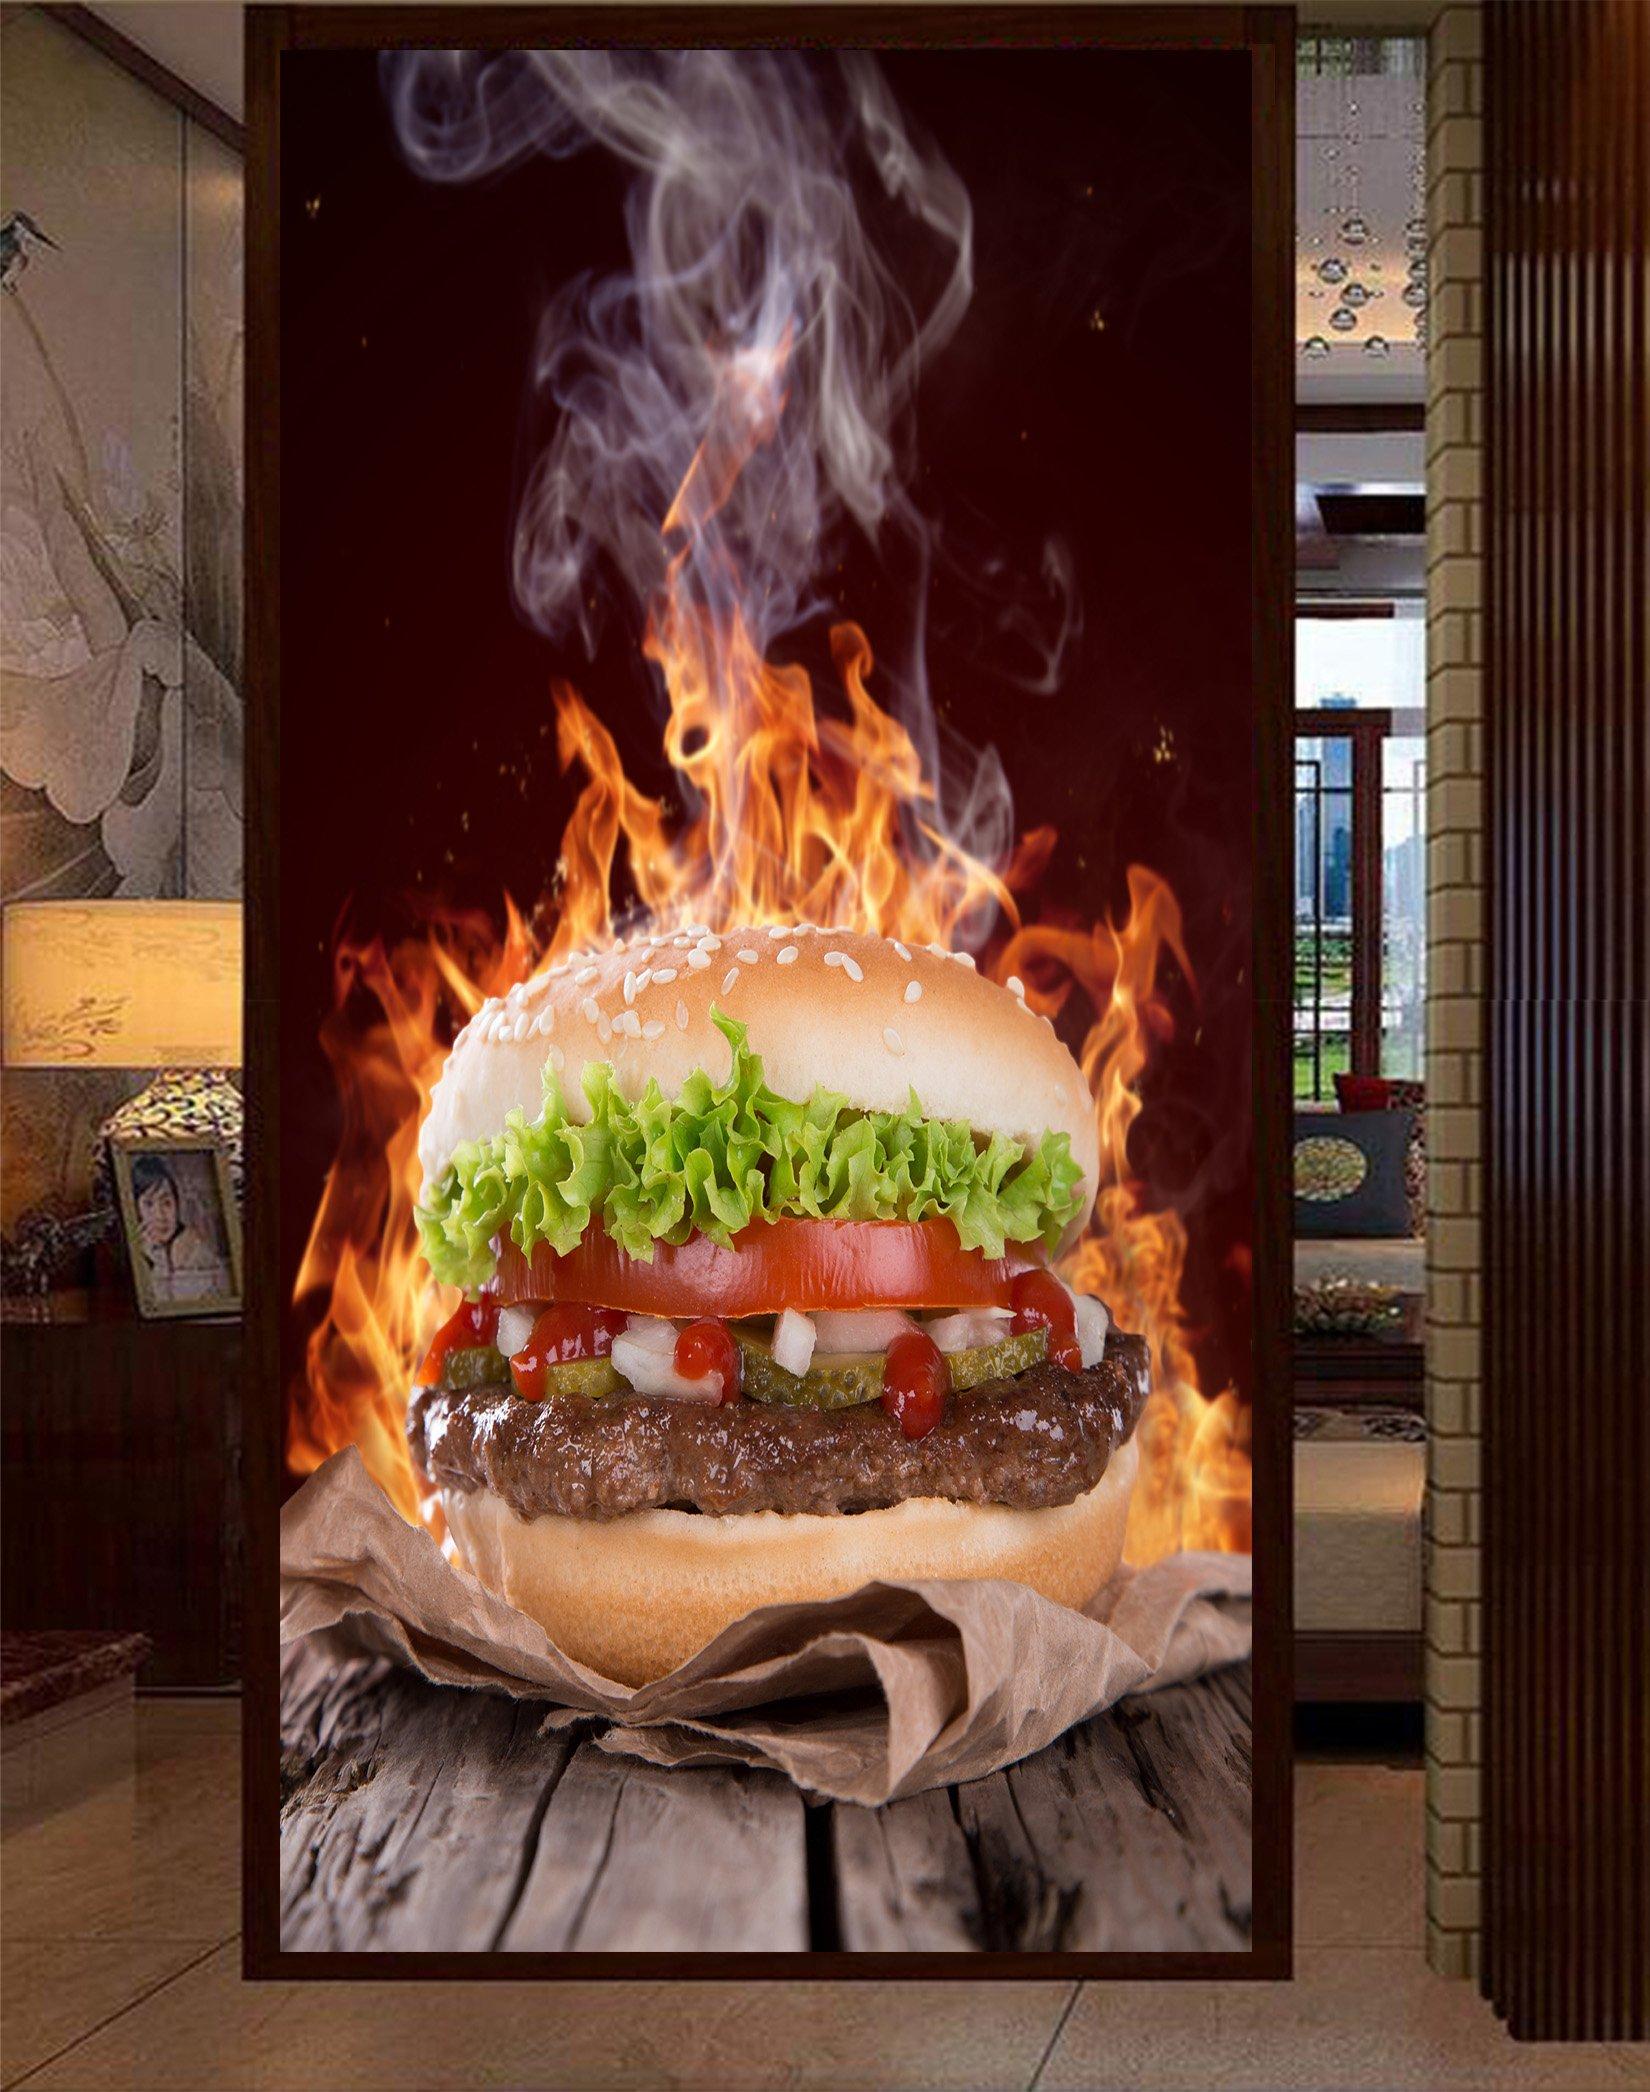 3D Fire Hamburger 005 Wallpaper AJ Wallpaper 